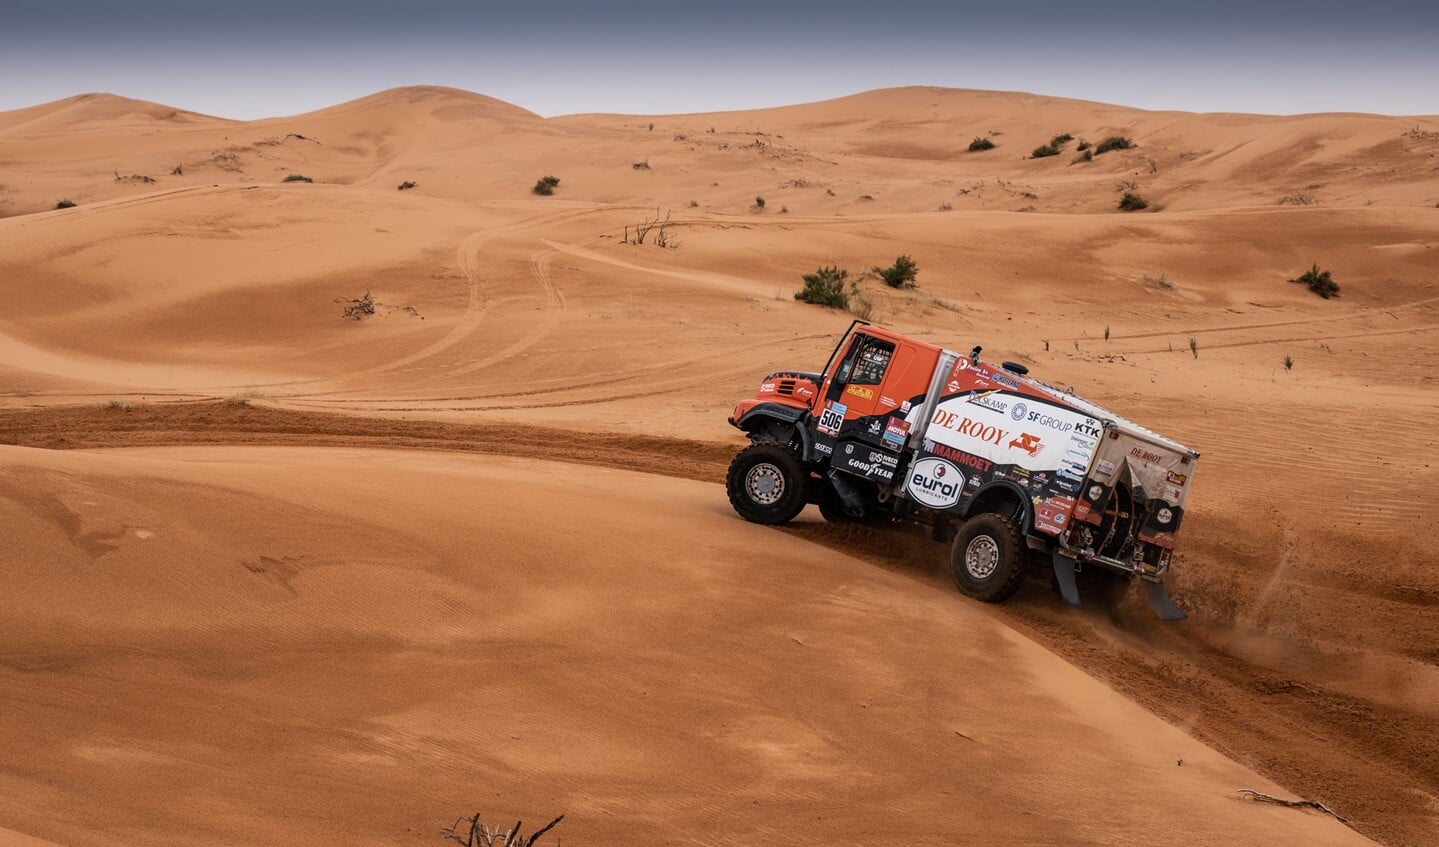 Martin van den Brink eindigde vandaag als vijfde en heeft net voor de rustdag in de Dakar Rally de goede vorm te pakken.